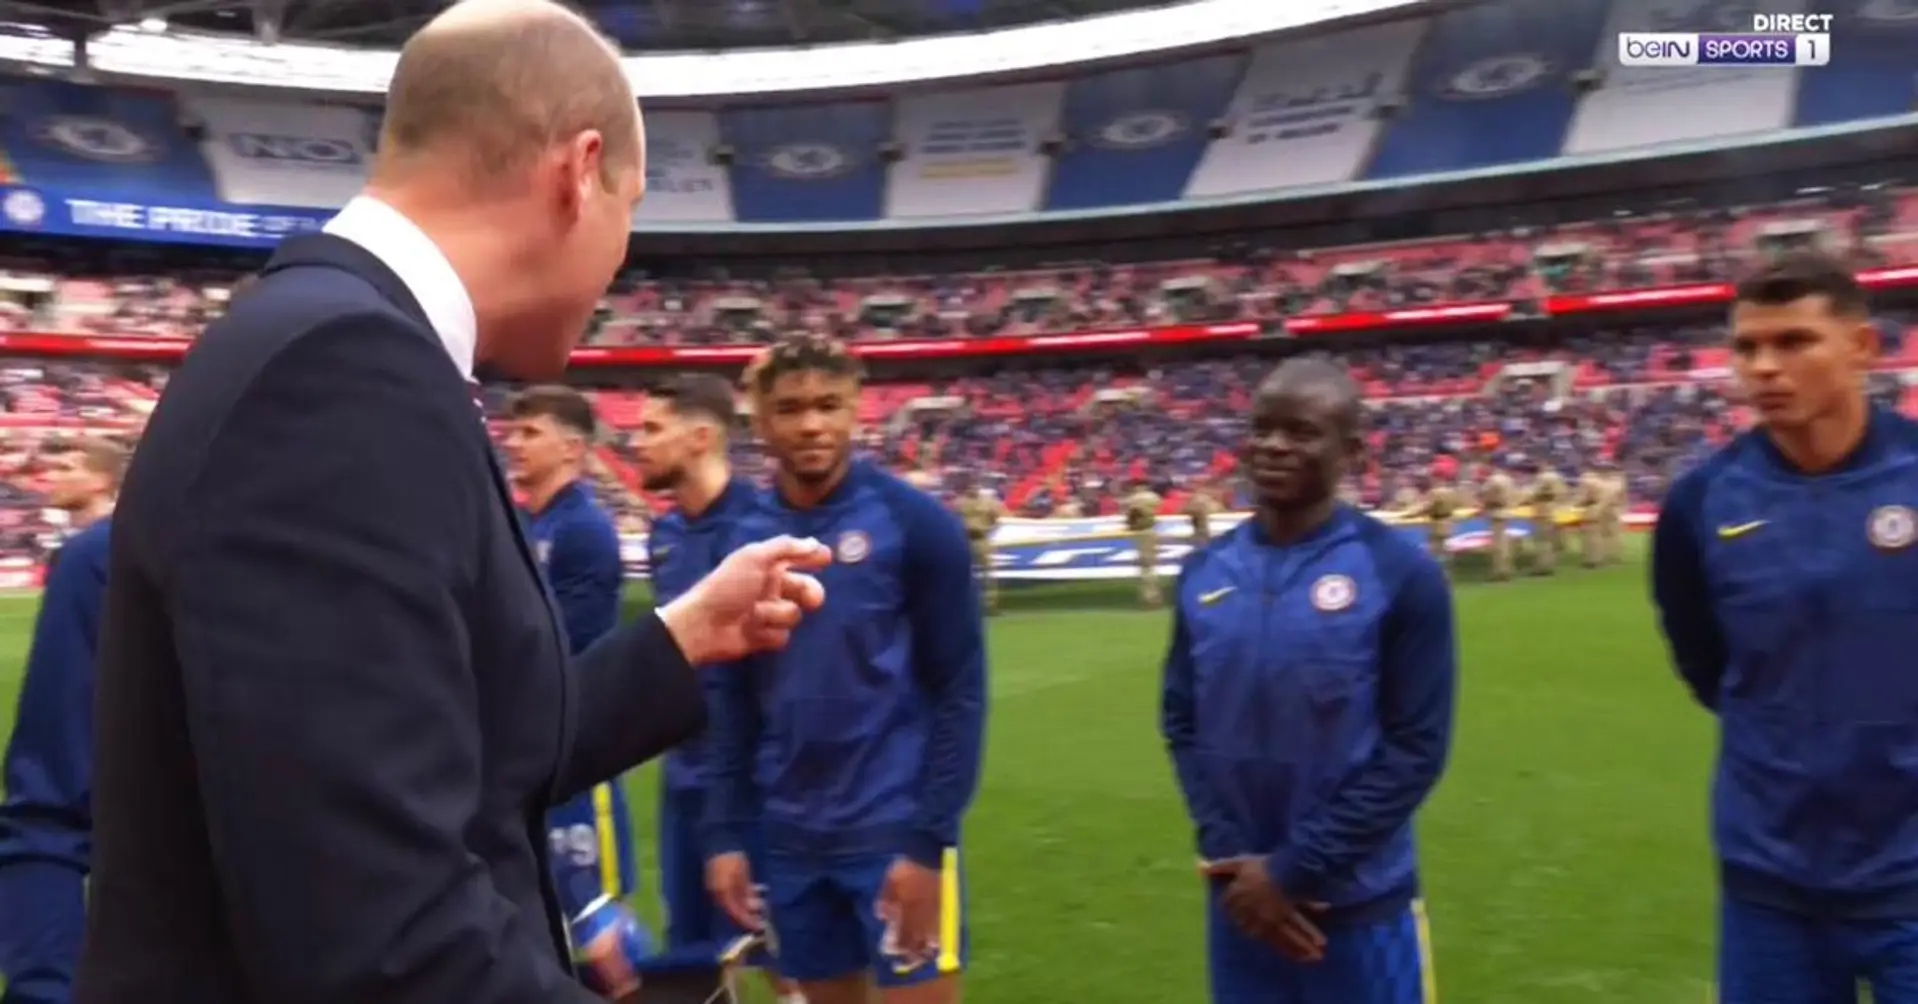 Bellissimo momento tra il principe William e N'Golo Kante catturato dalle telecamere prima della finale di FA Cup